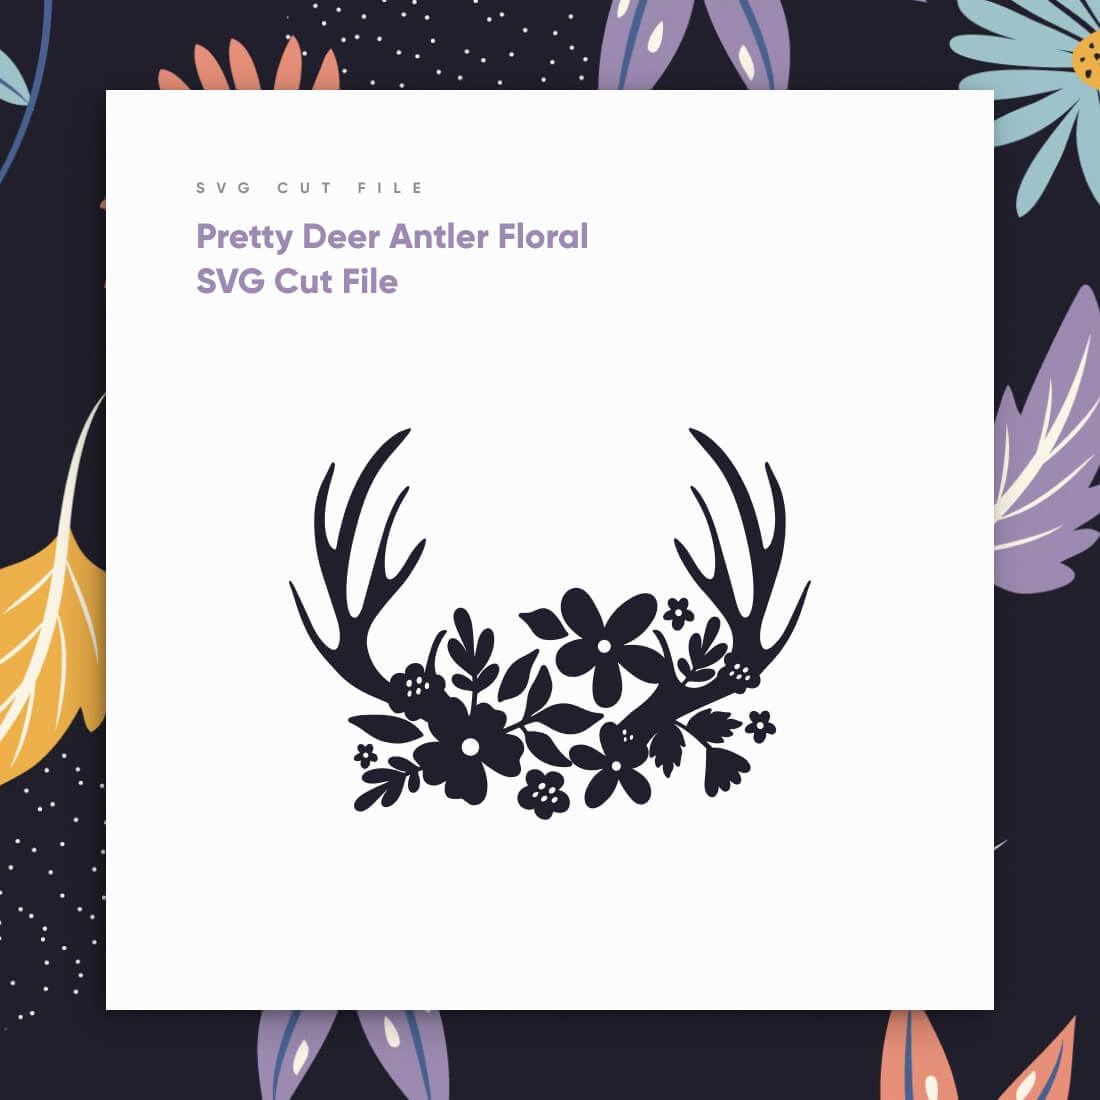 Pretty Deer Antler Floral SVG Cut File fcebook.